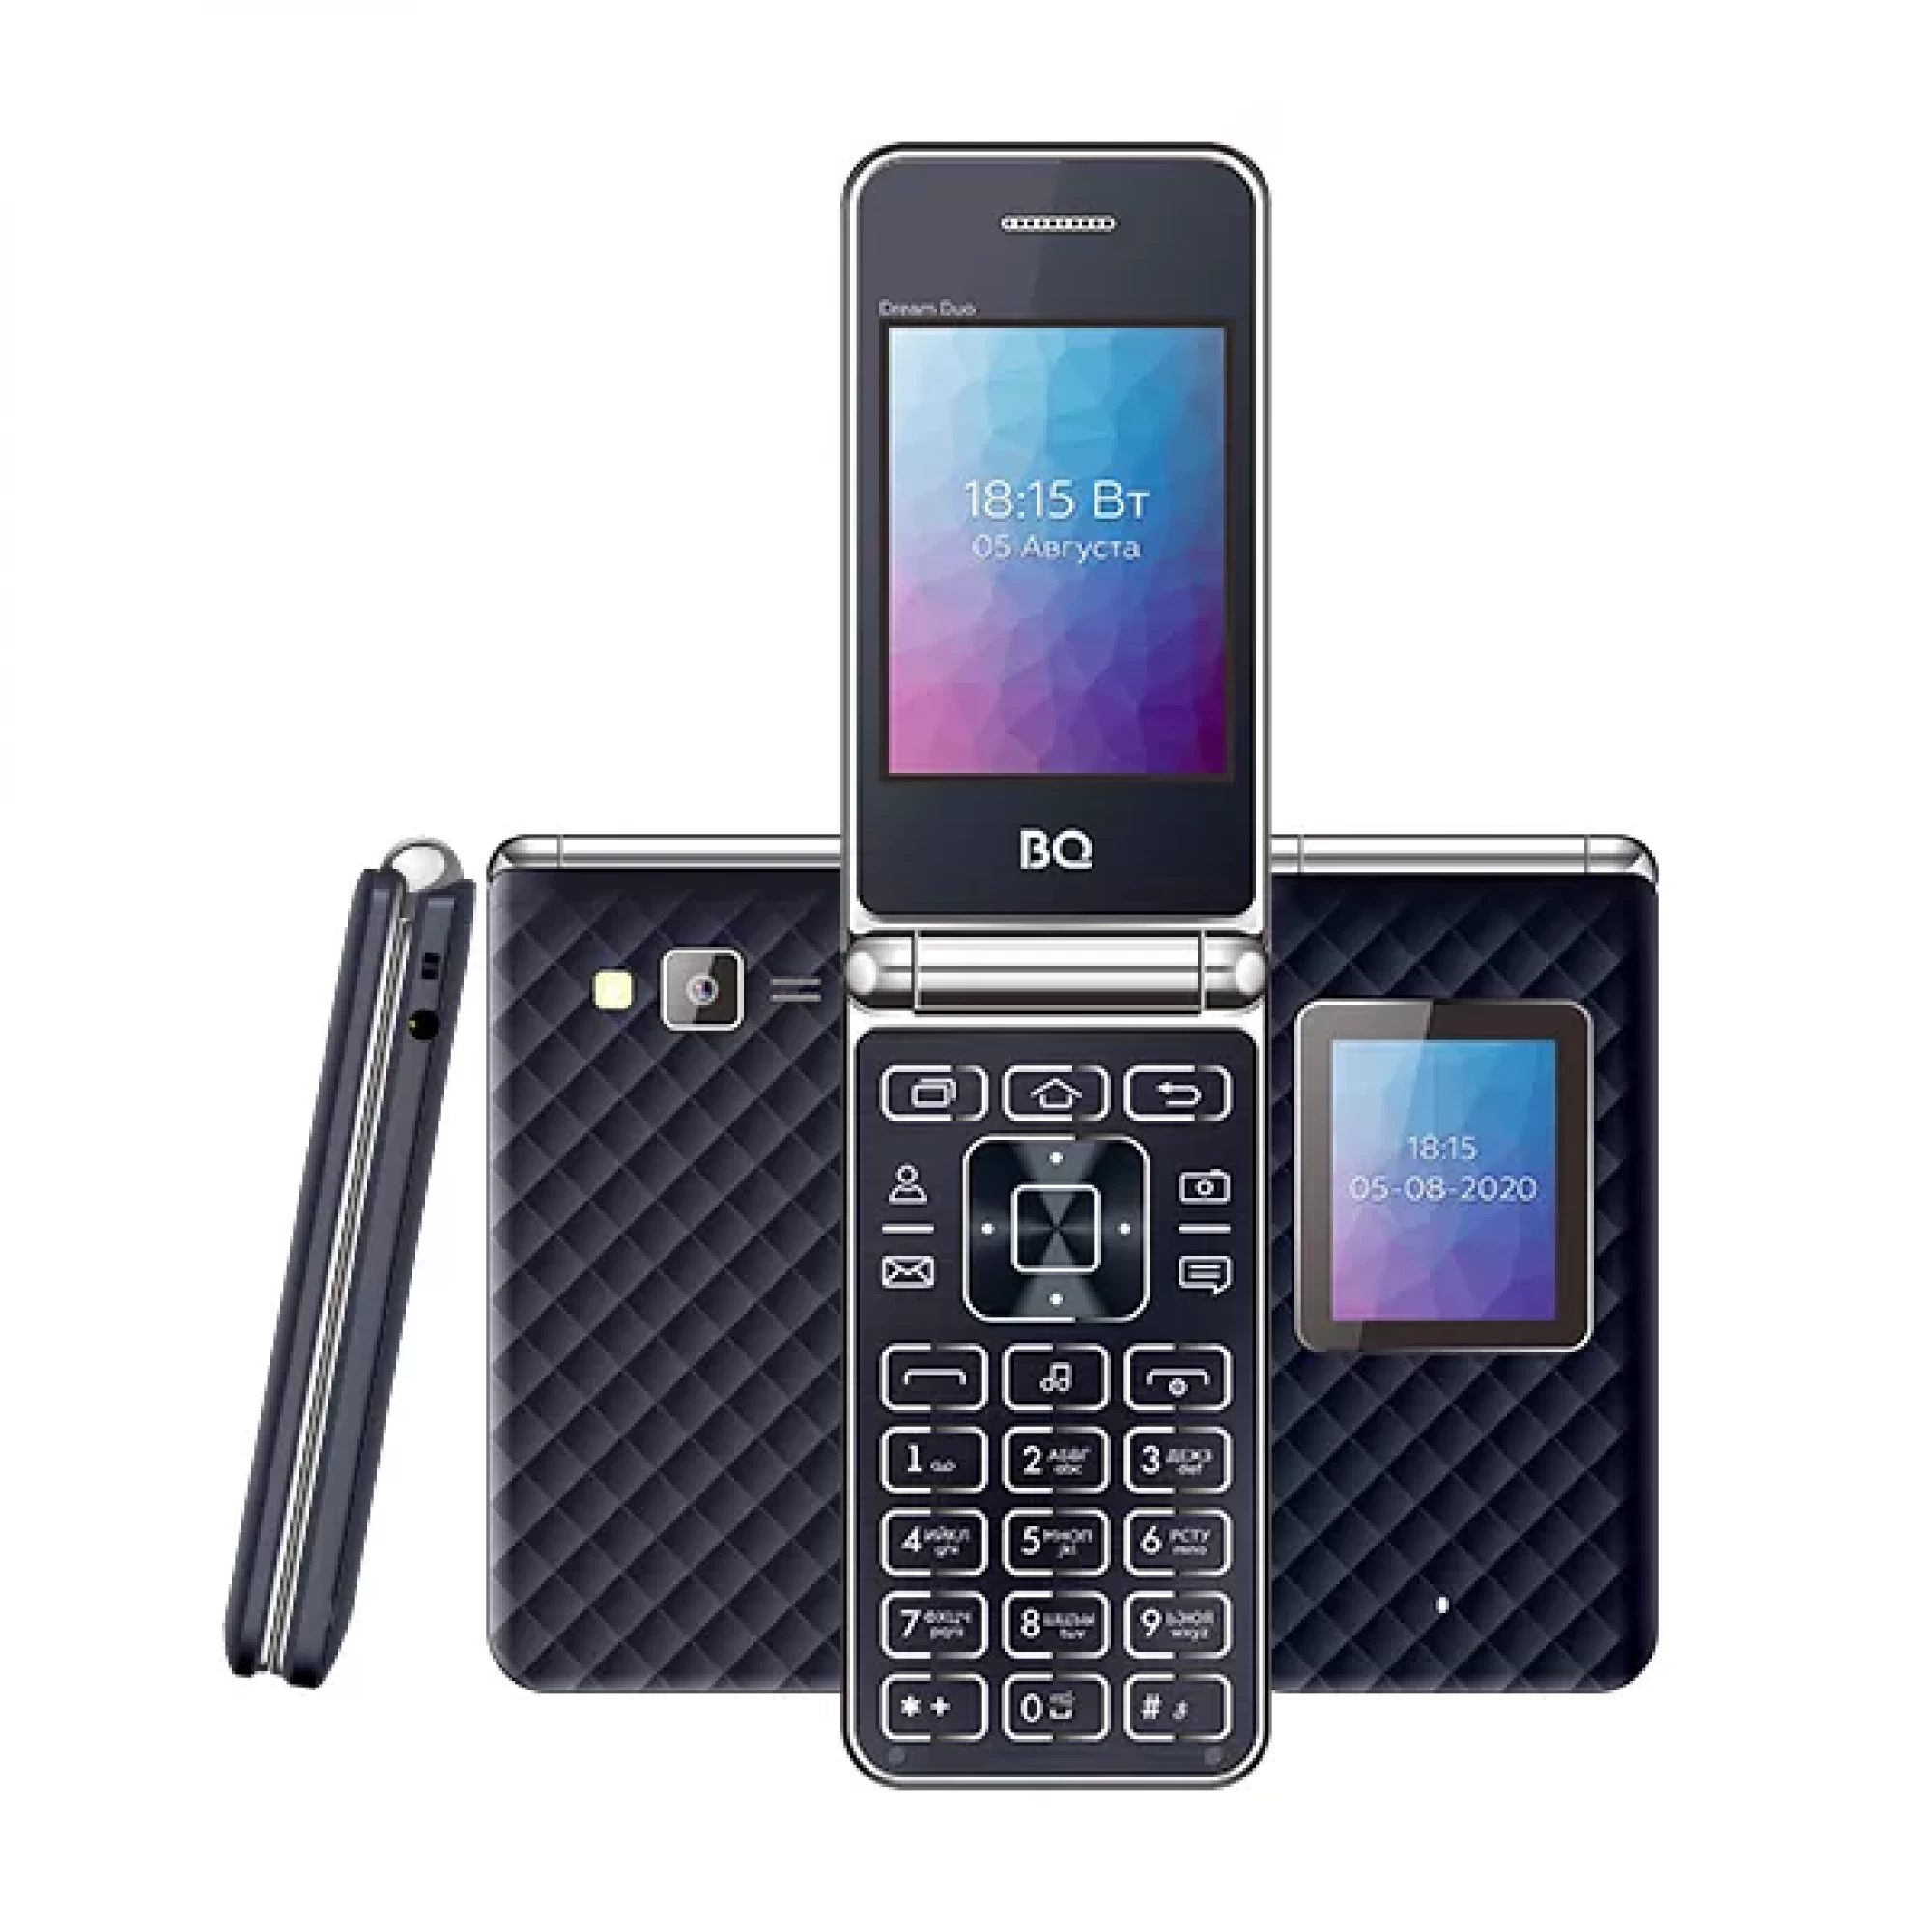 Мобильный телефон BQ BQ-2446 Dream Duo (синий)